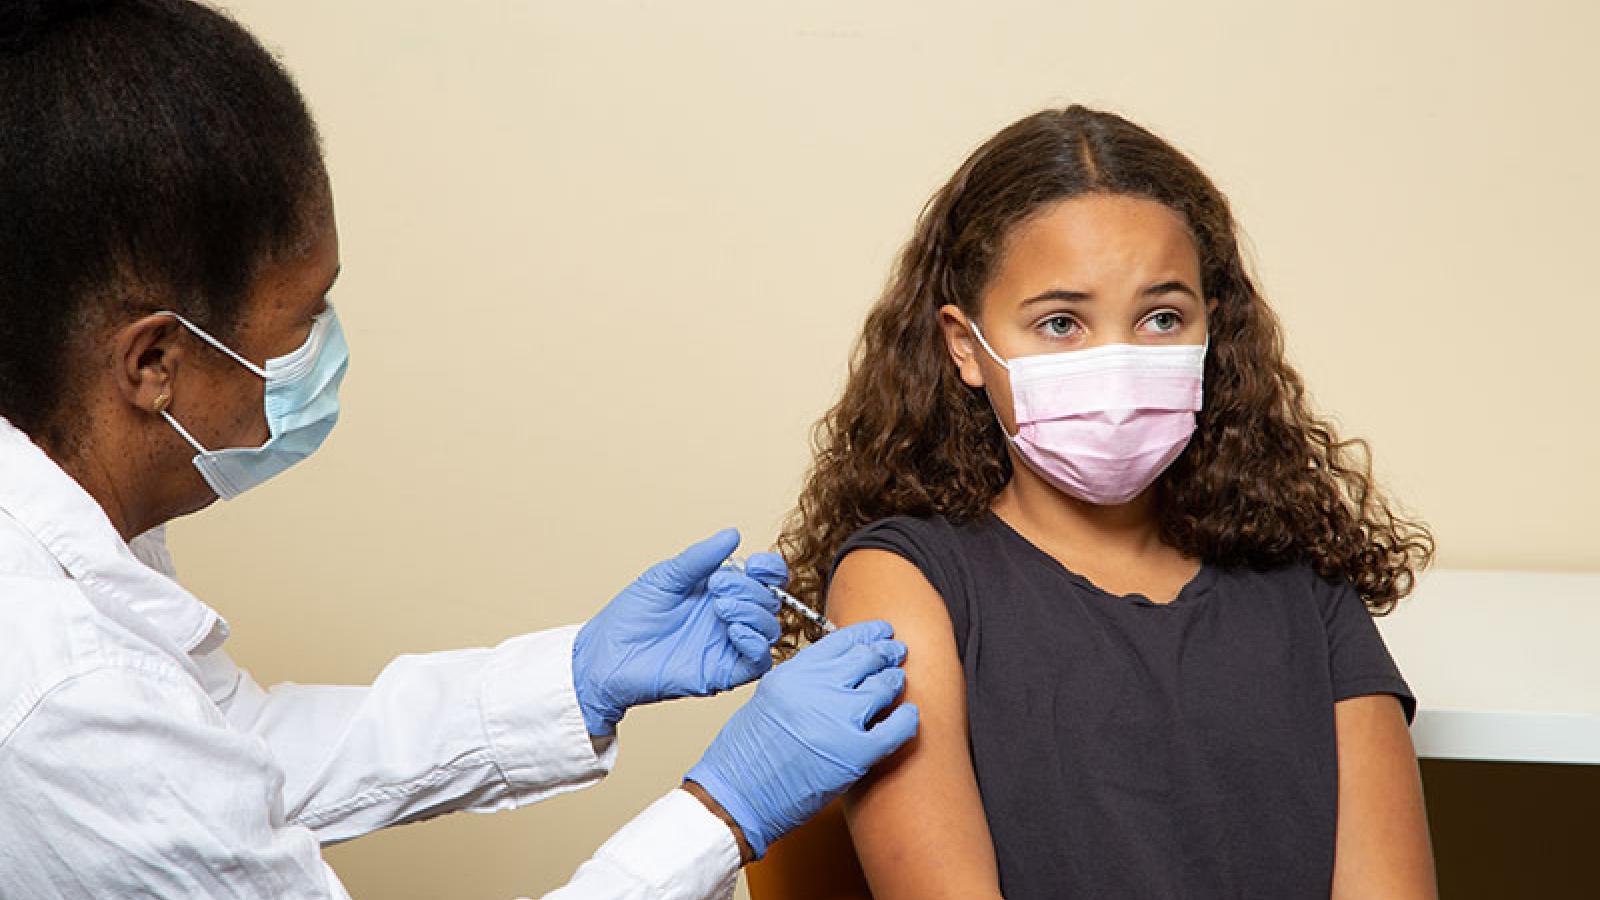 儿童和COVID-19疫苗:父母需要知道的事情